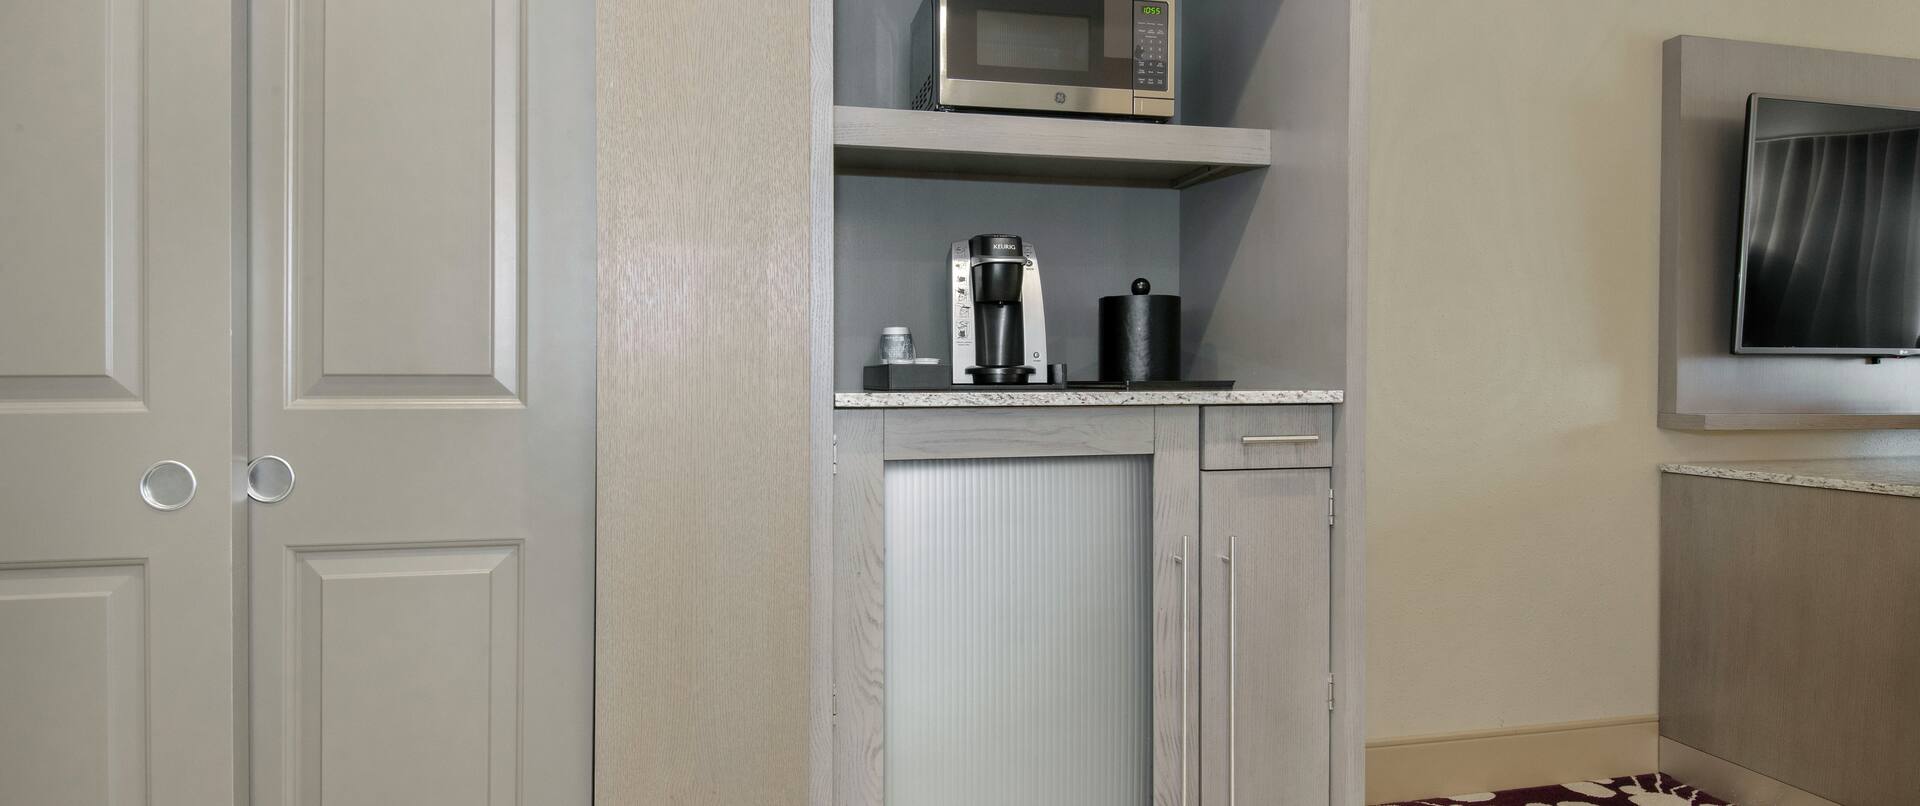 Refrigerator, Microwave & Keurig Coffee Maker in all Guest Rooms